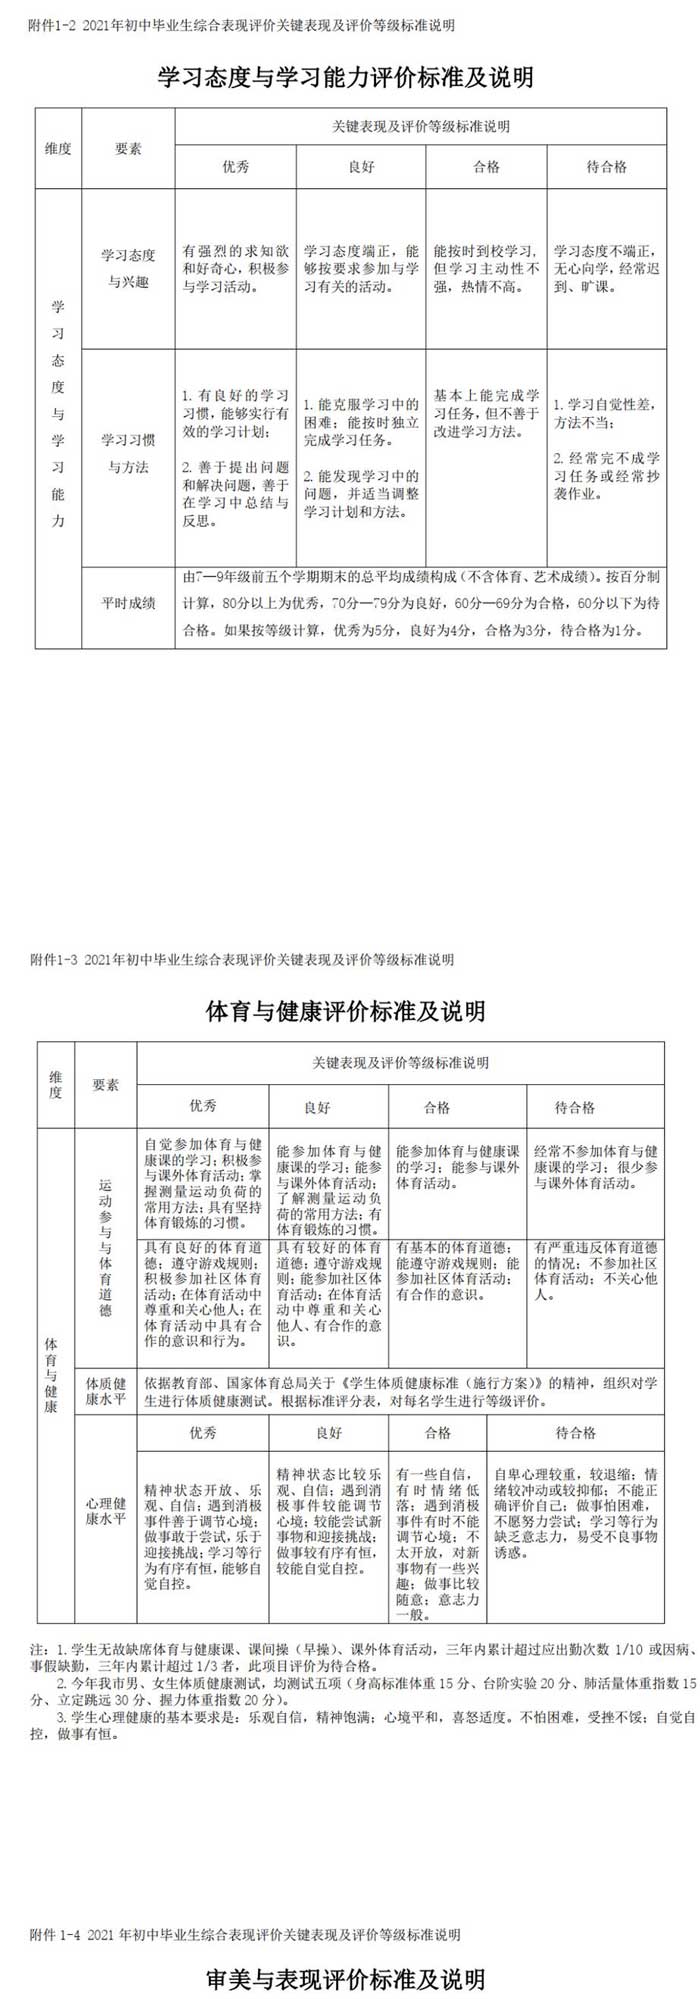 深圳实验学校初中部公布2021年初中毕业生综合表现评价实施方案